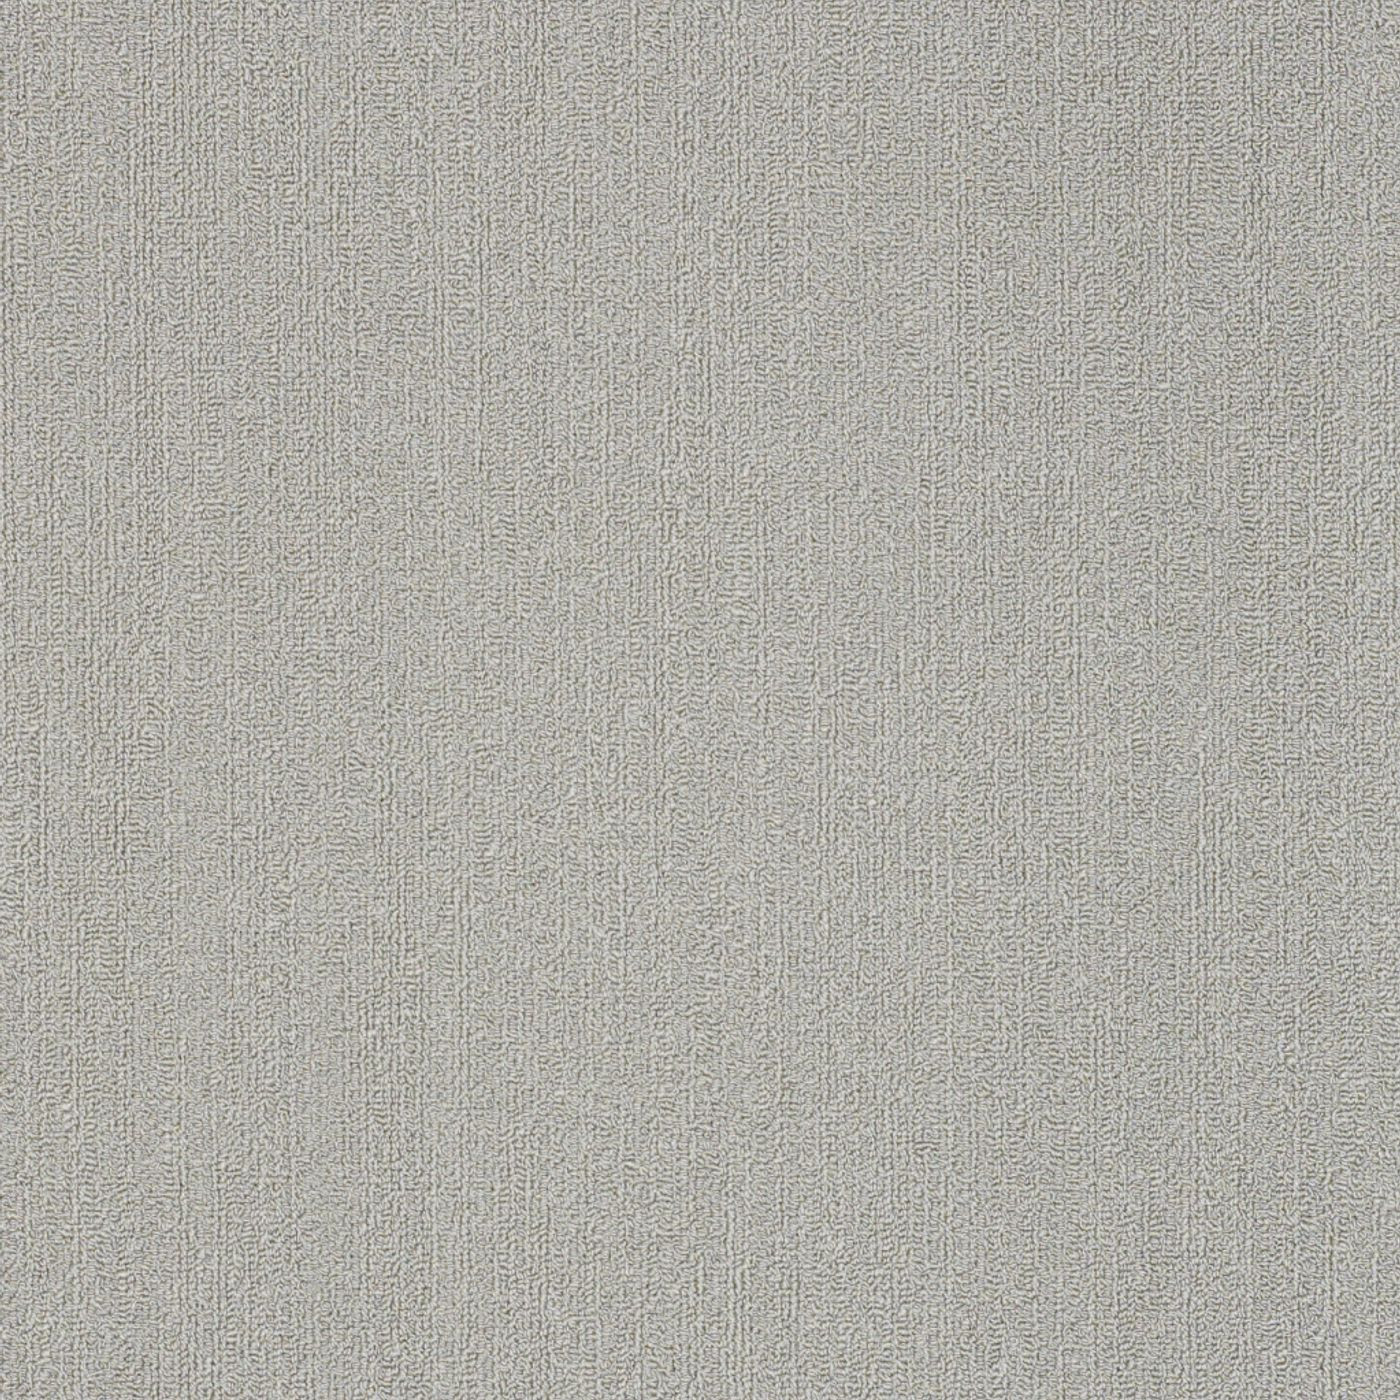 Philadelphia Commercial Color Accents Carpet Tile Silver 24" x 24" Premium